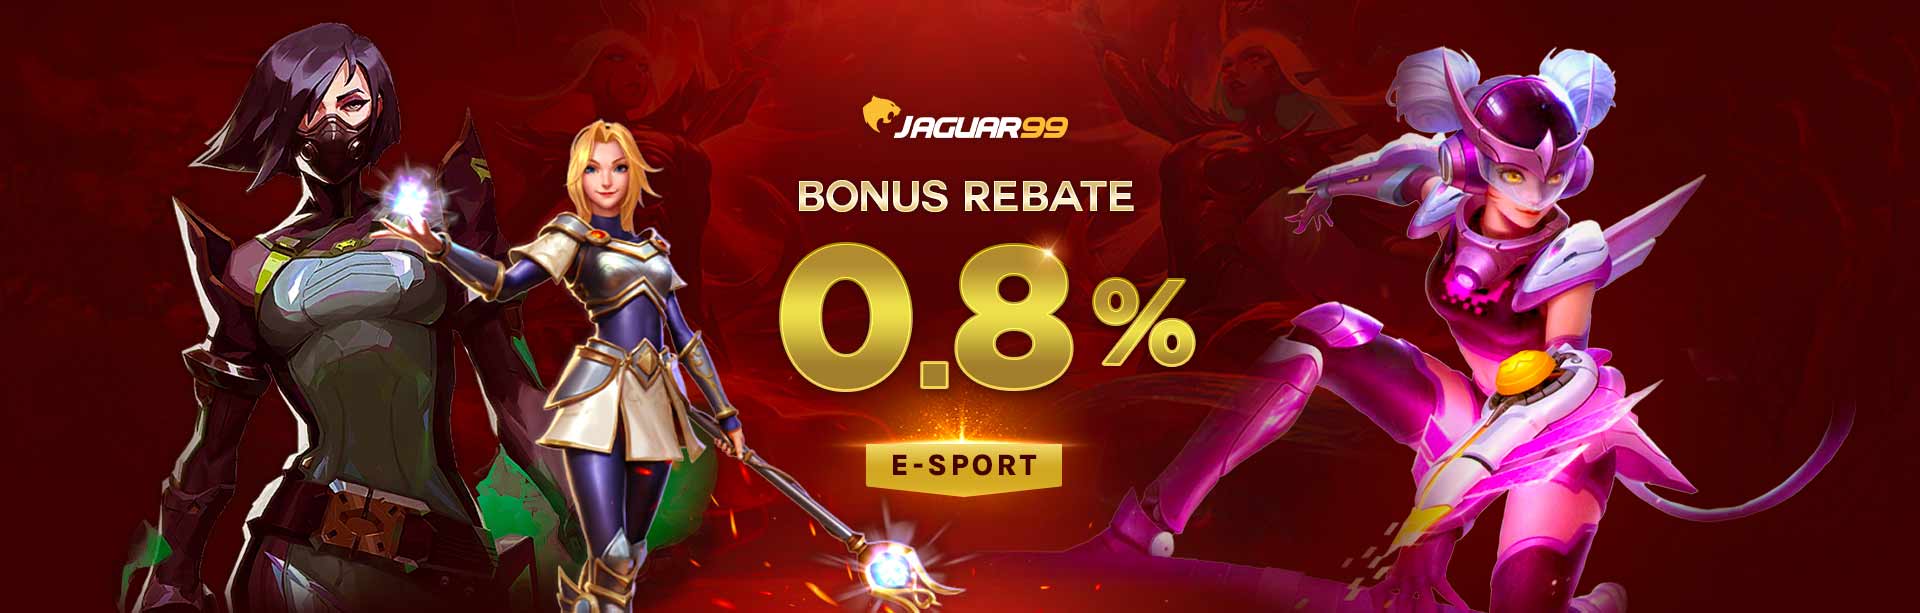 Jaguar99 Bonus Rebate 0.8% eSports